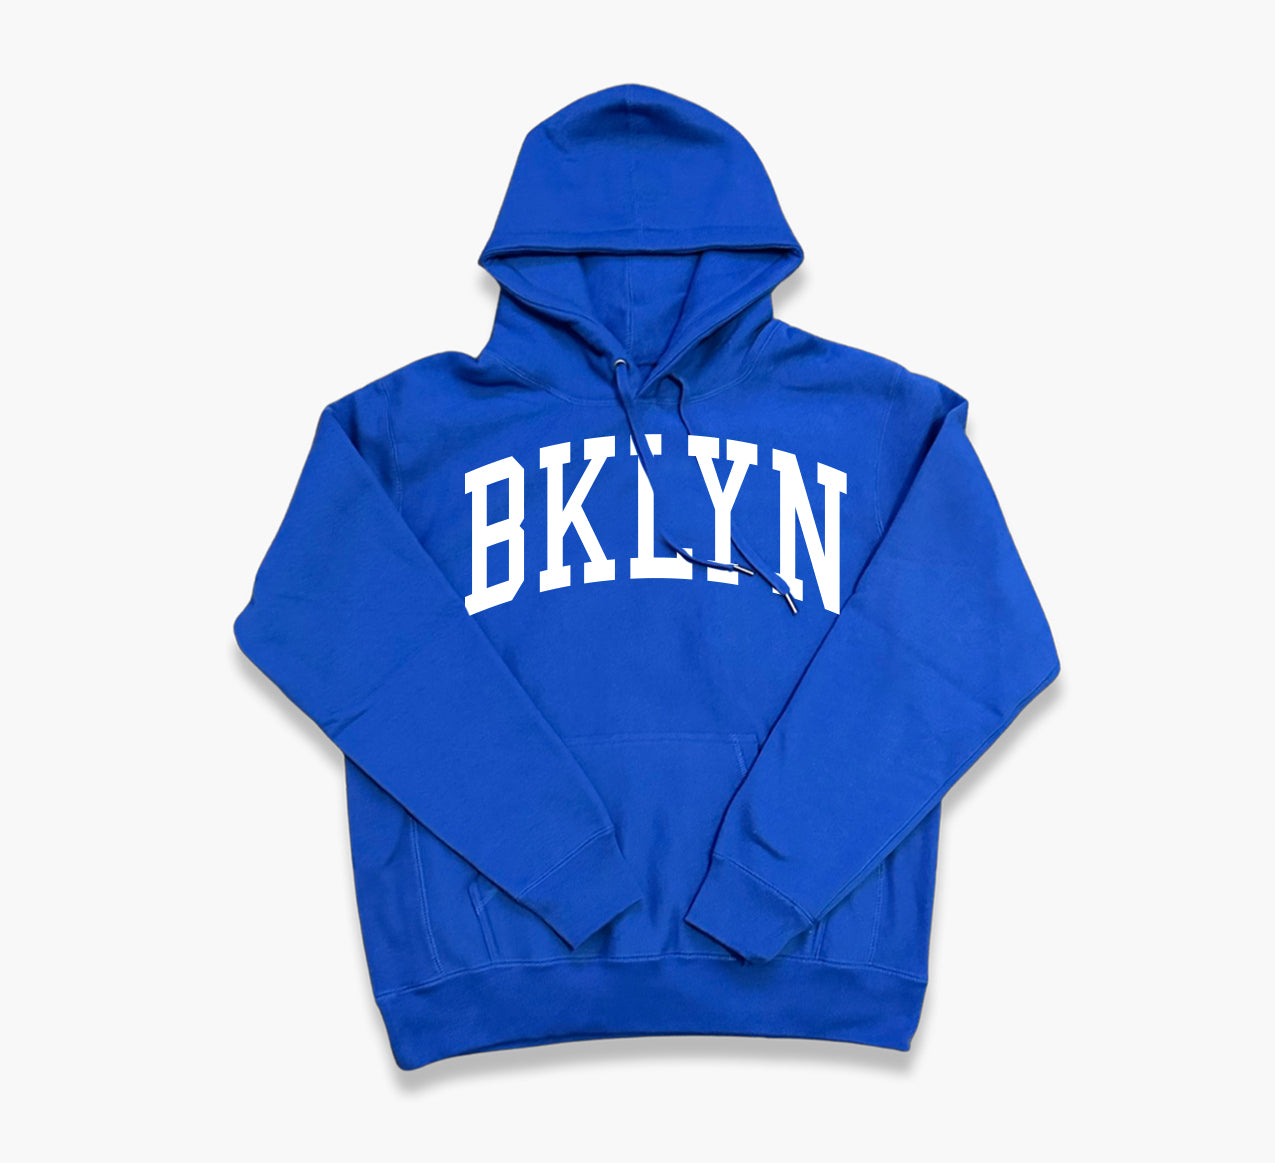 Premium BKLYN Royal blue Hoodie